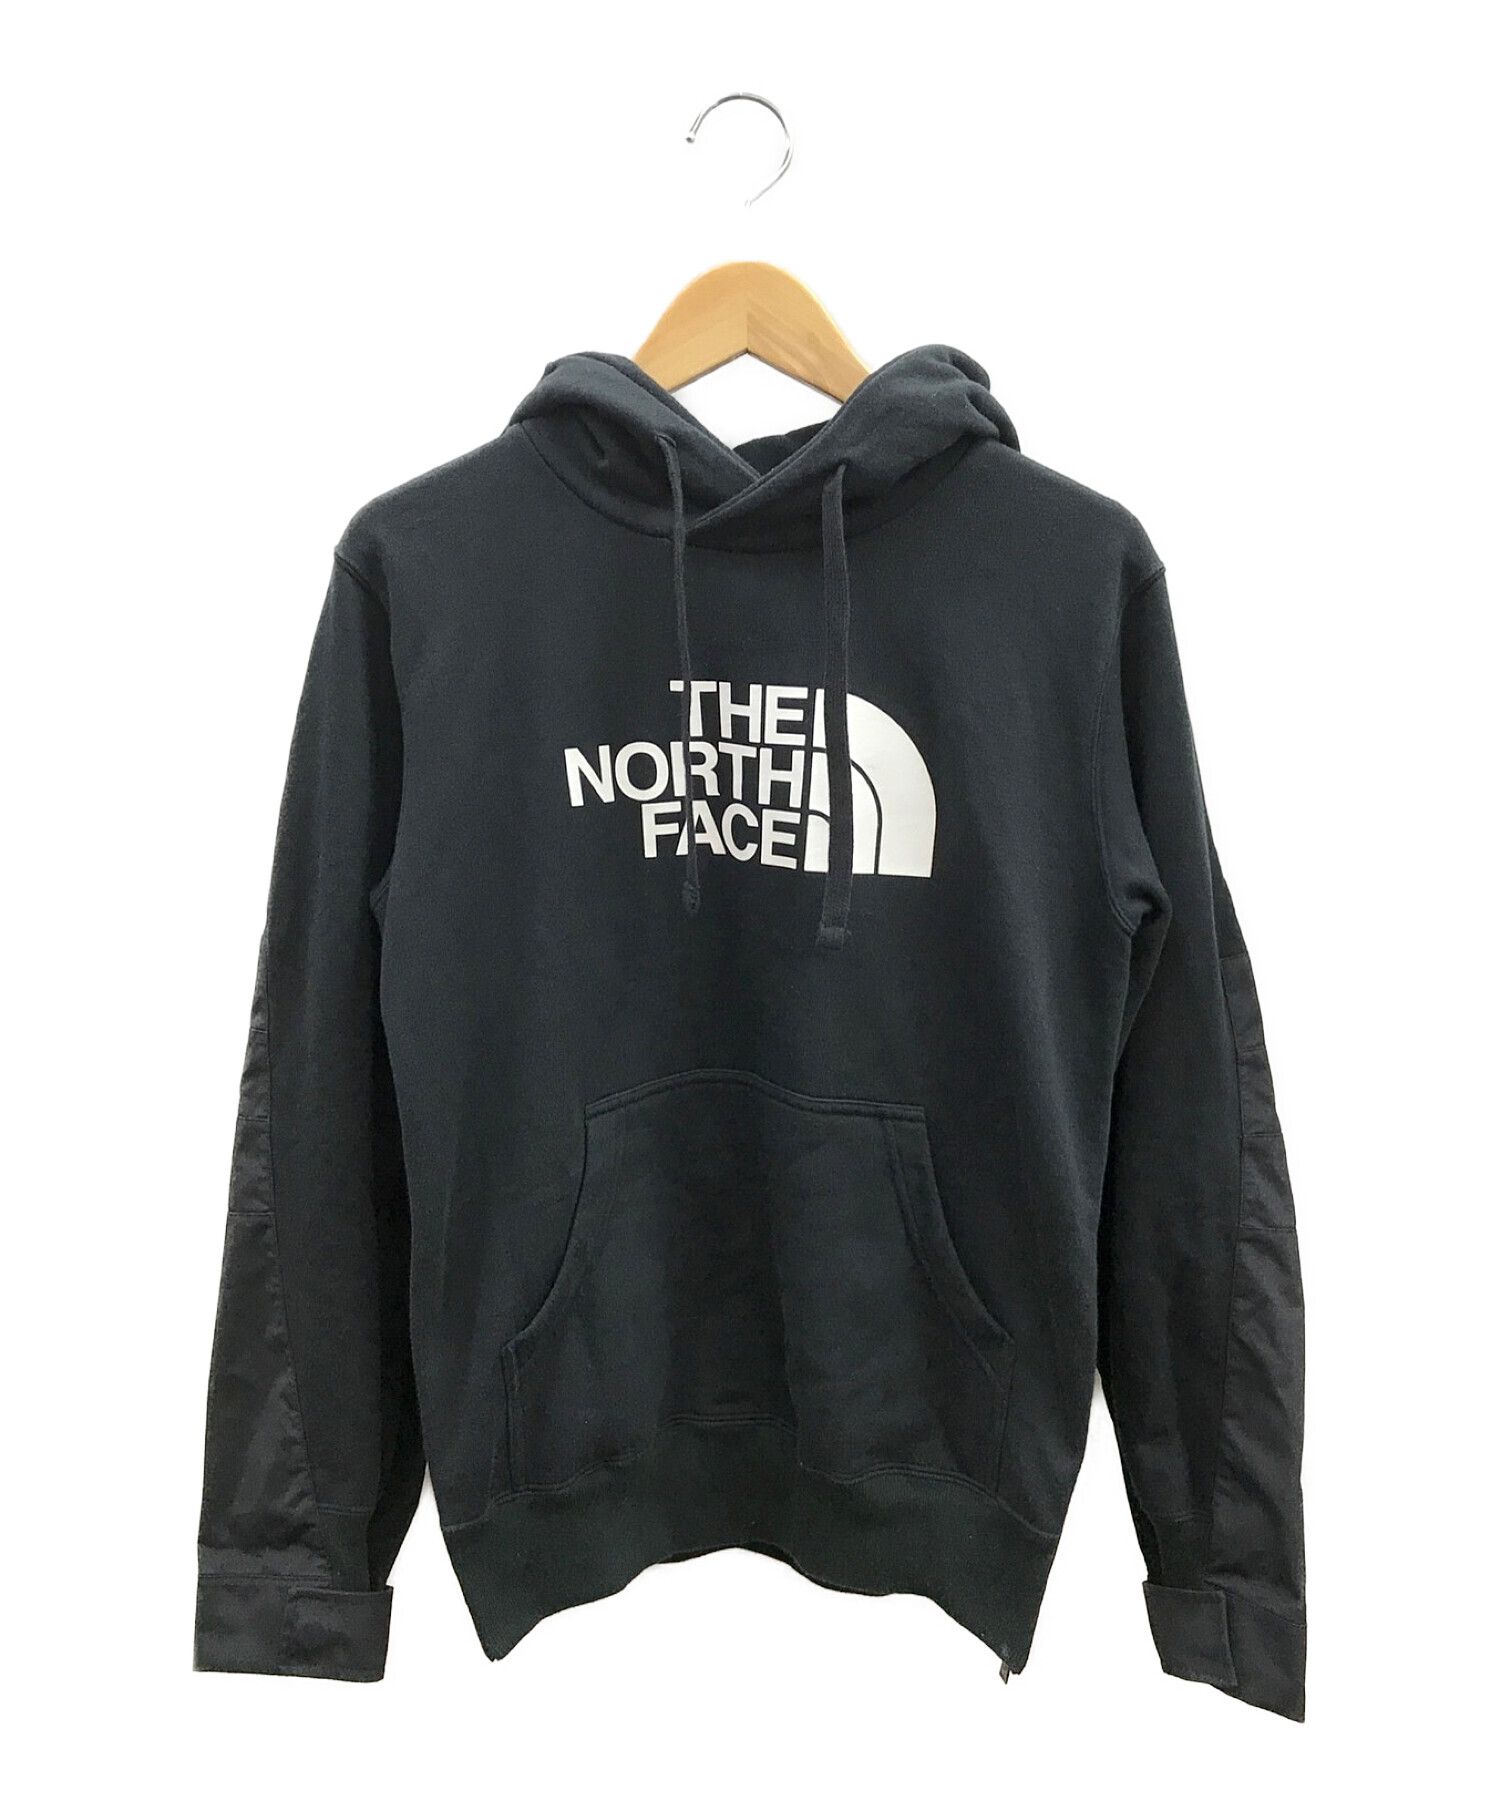 THE NORTH FACE × sacai (ノースフェイス×サカイ) コラボ切替 プルオーバー パーカー ブラック サイズ:S